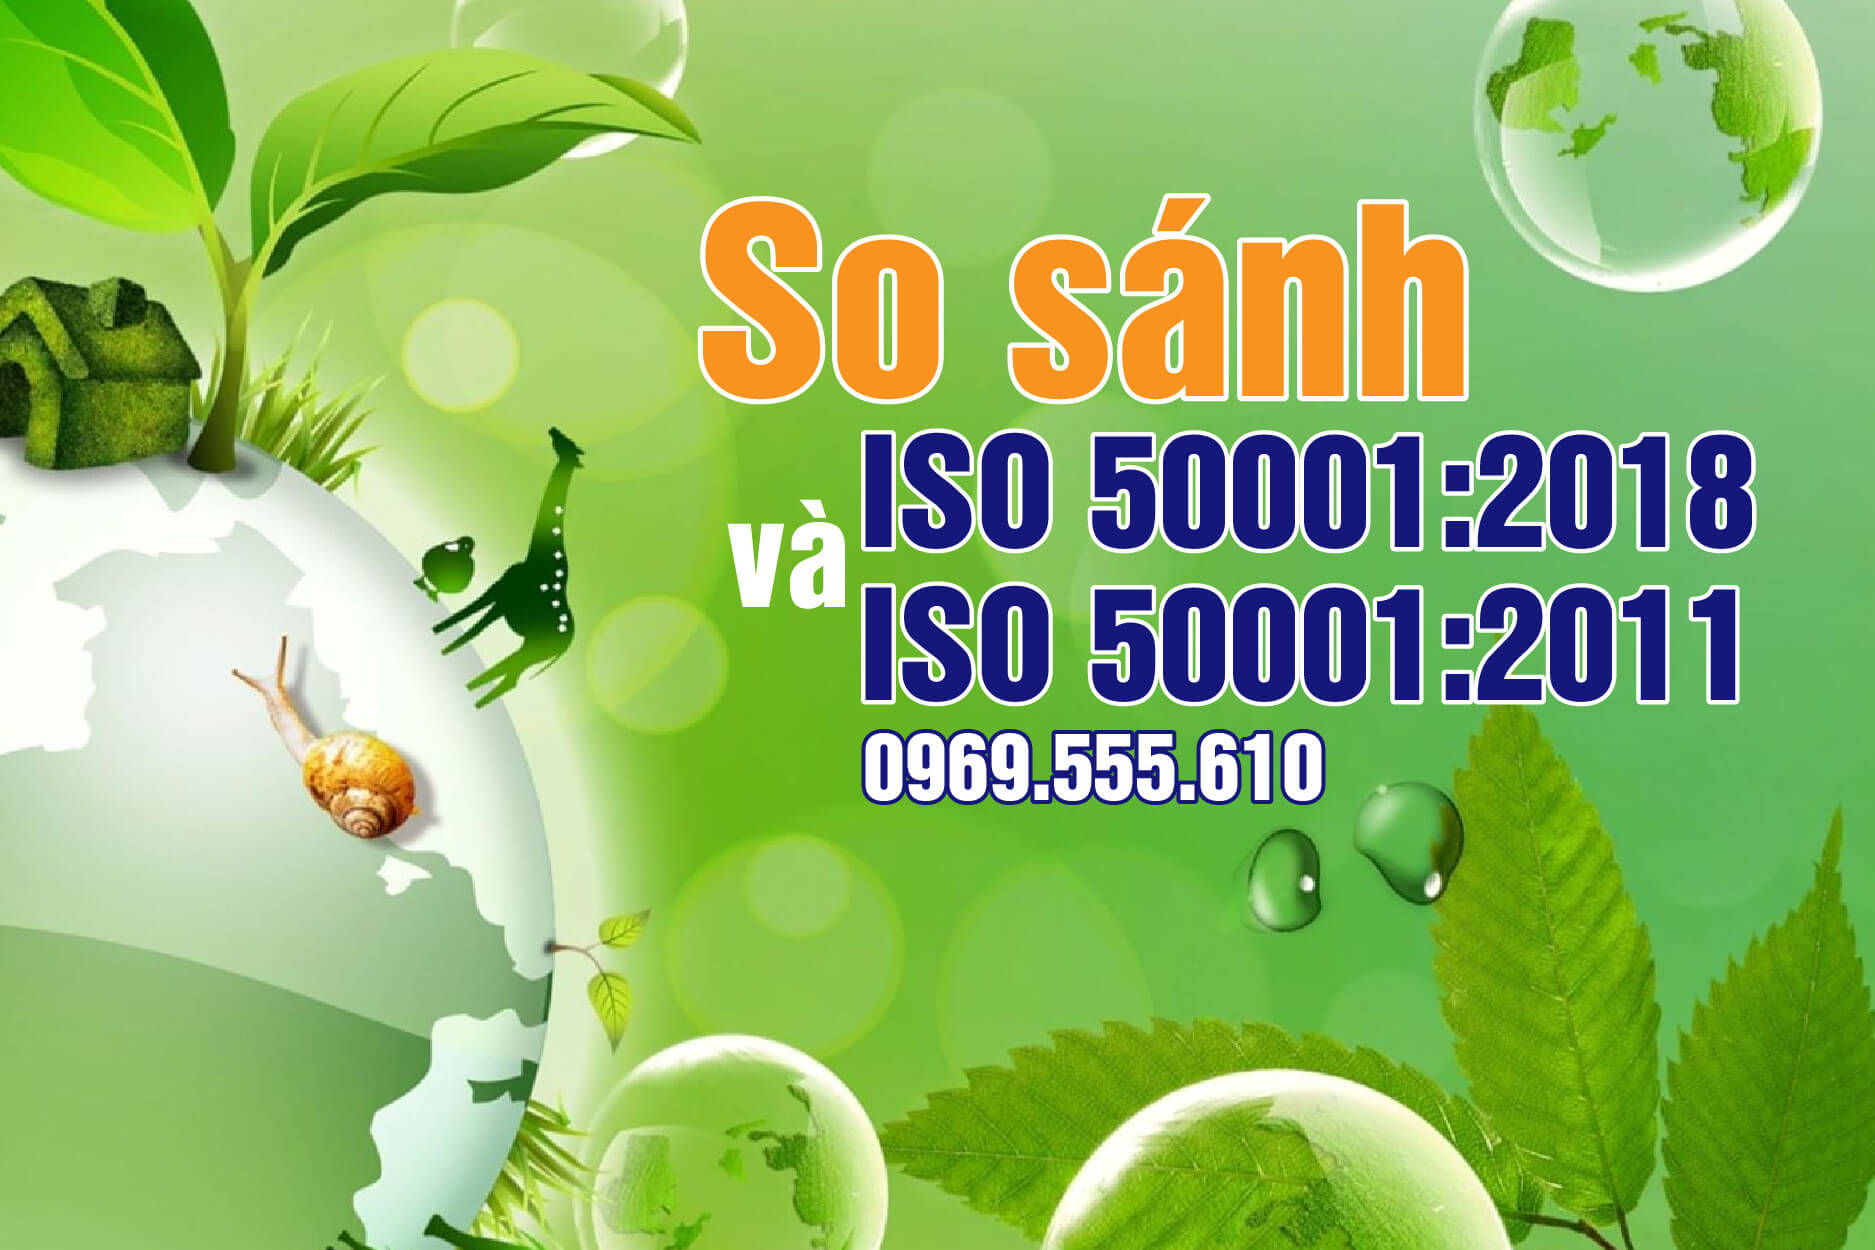 So sánh ISO 500012011 và ISO 500012018